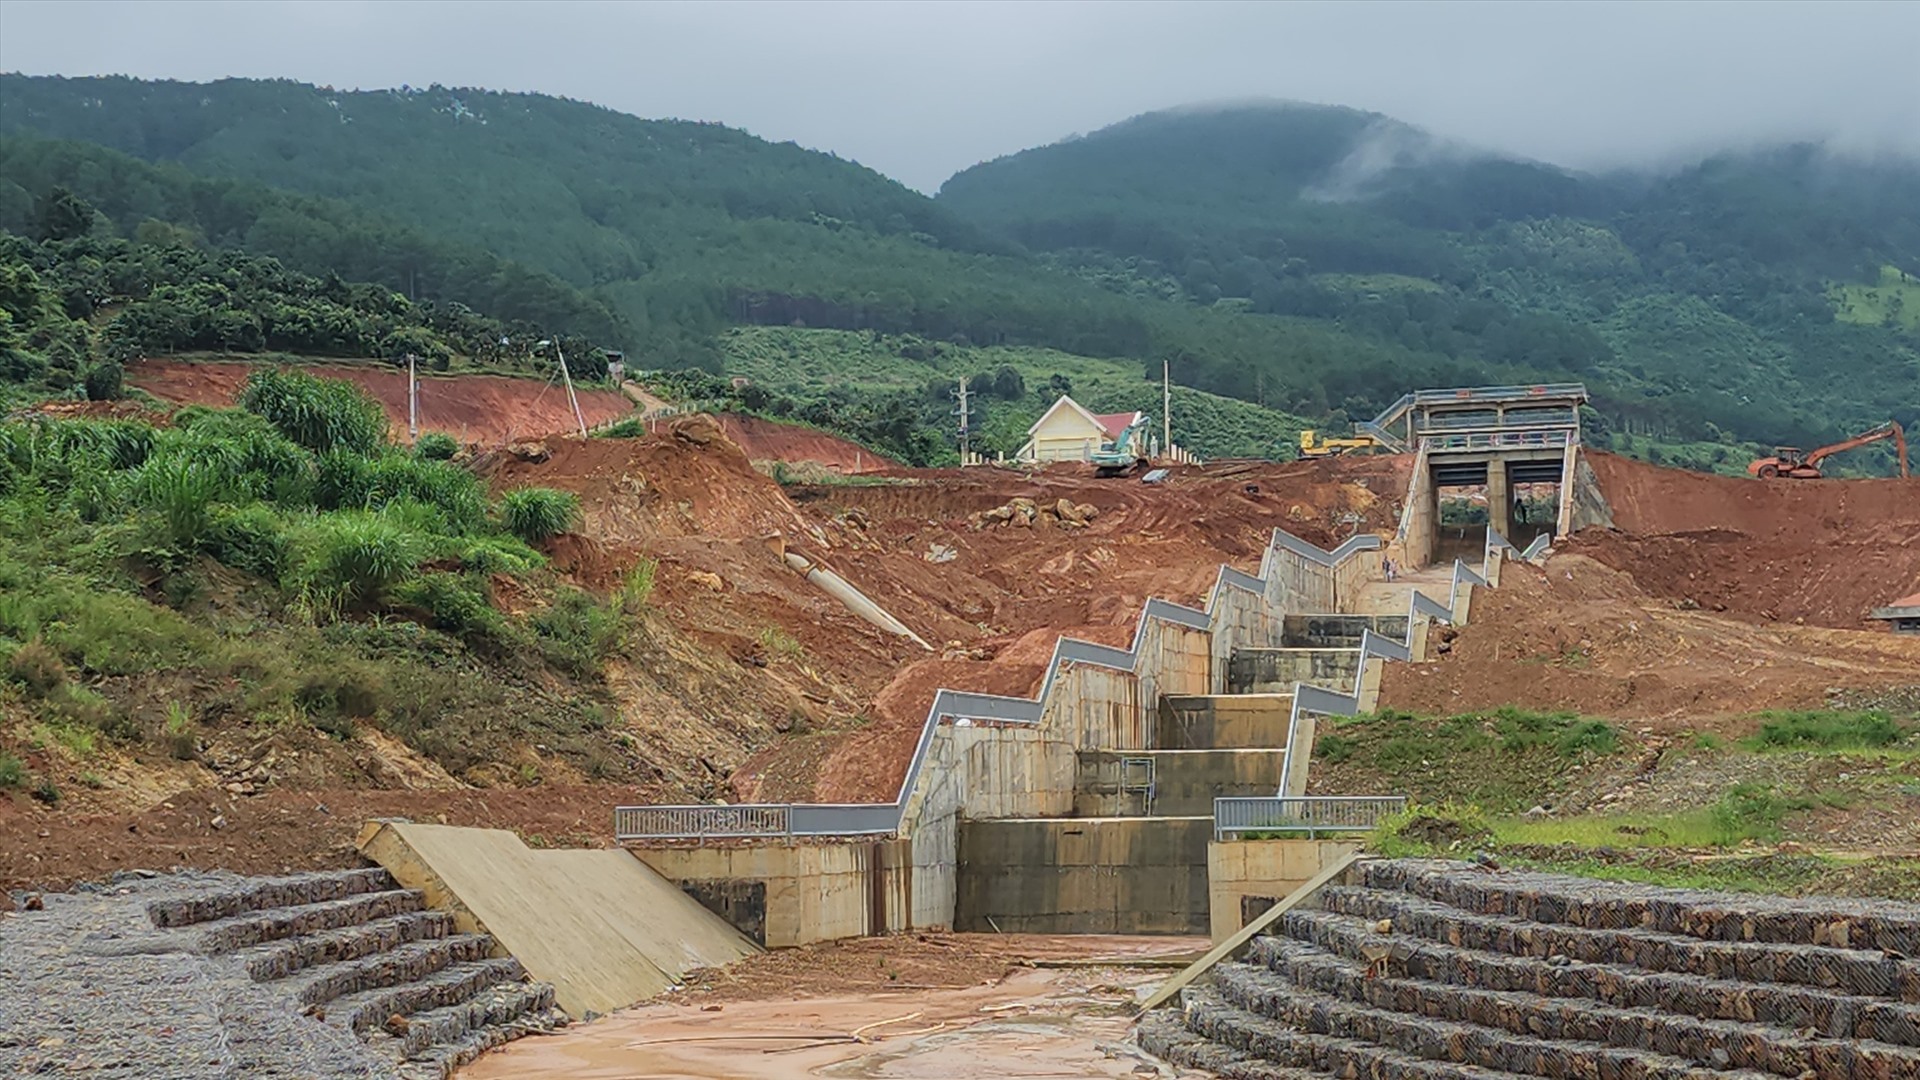 Tình trạng sạt trượt đất ảnh hưởng đến dự án hồ chứa nước Đông Thanh, nhiều hạng mục bị nghiêng, nứt. Ảnh: Võ Tùng